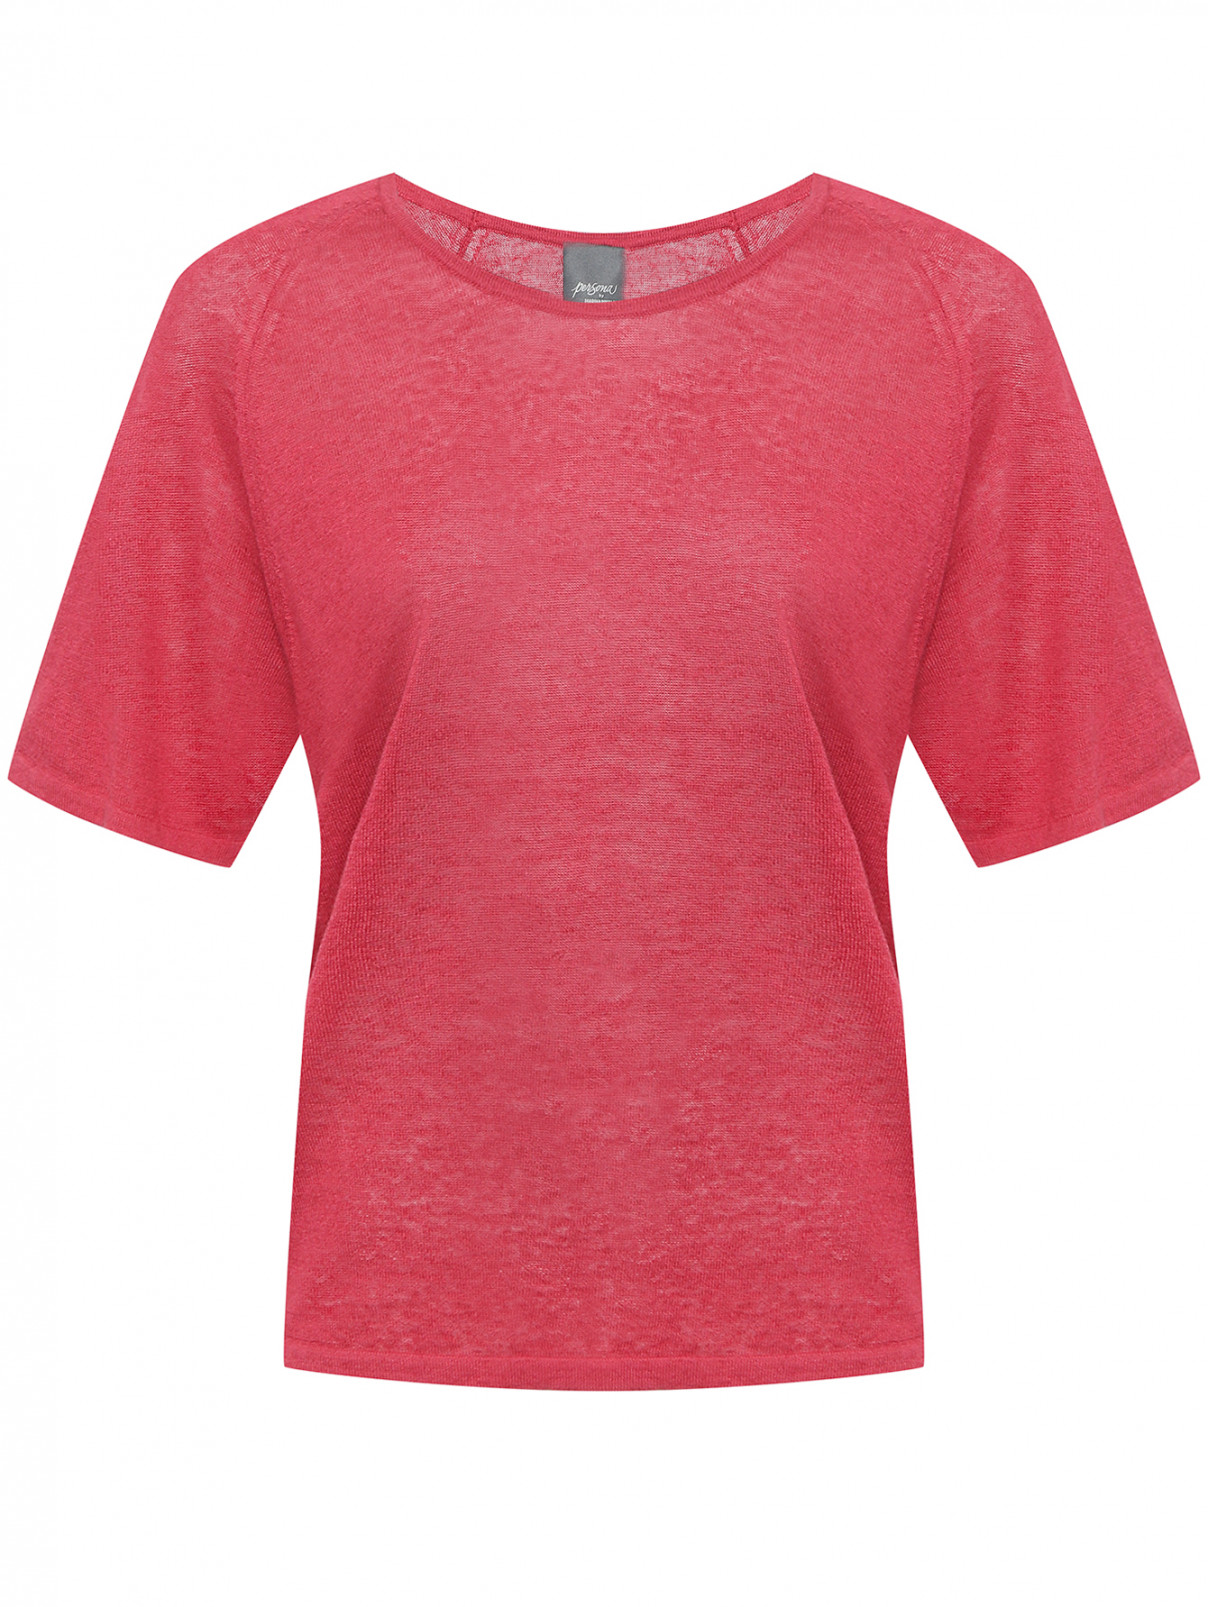 Однотонная футболка из льняного волокна Persona by Marina Rinaldi  –  Общий вид  – Цвет:  Красный